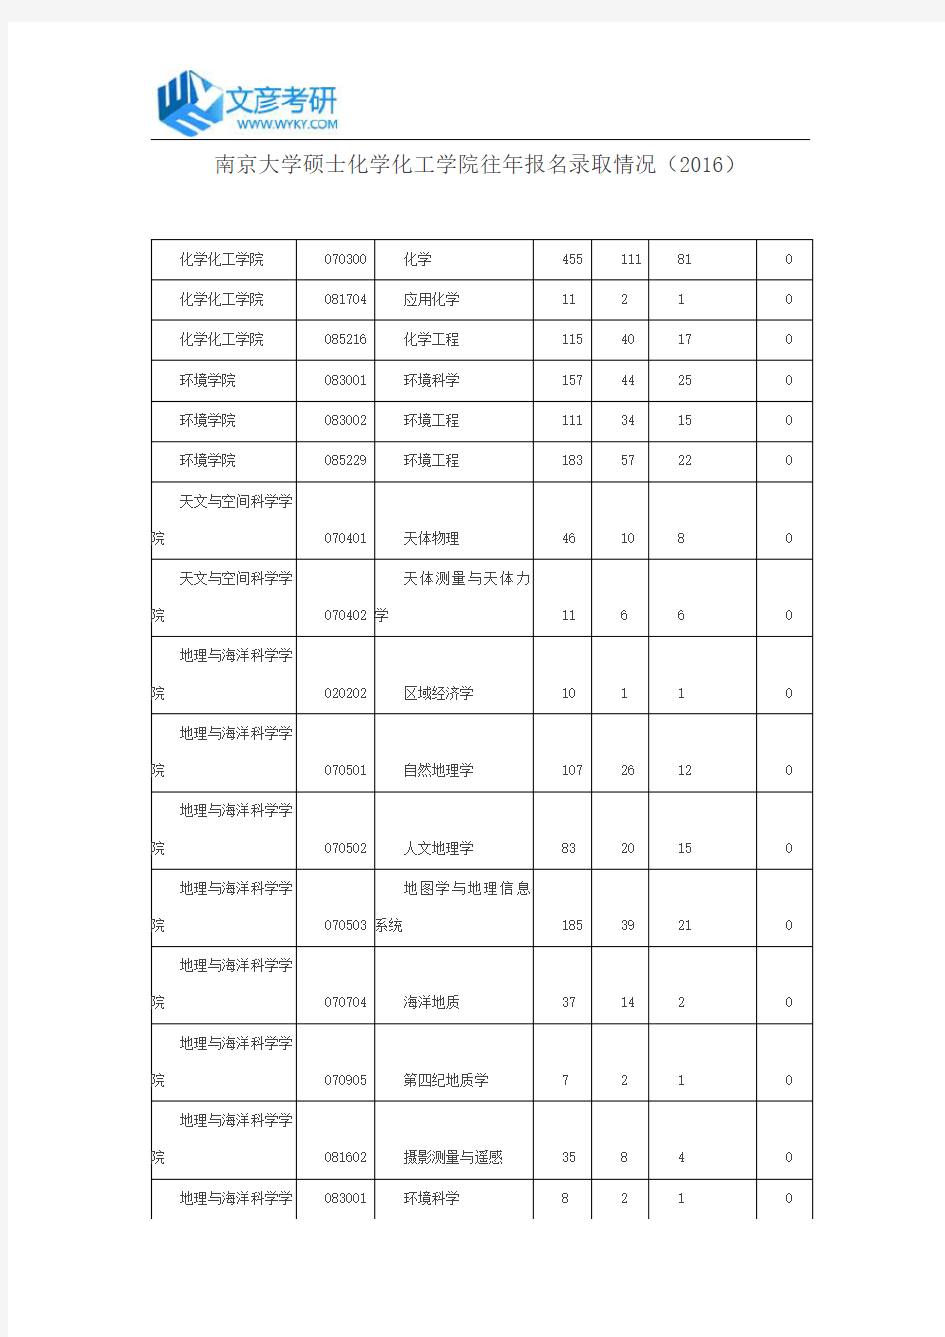 南京大学硕士化学化工学院往年报名录取情况(2016)